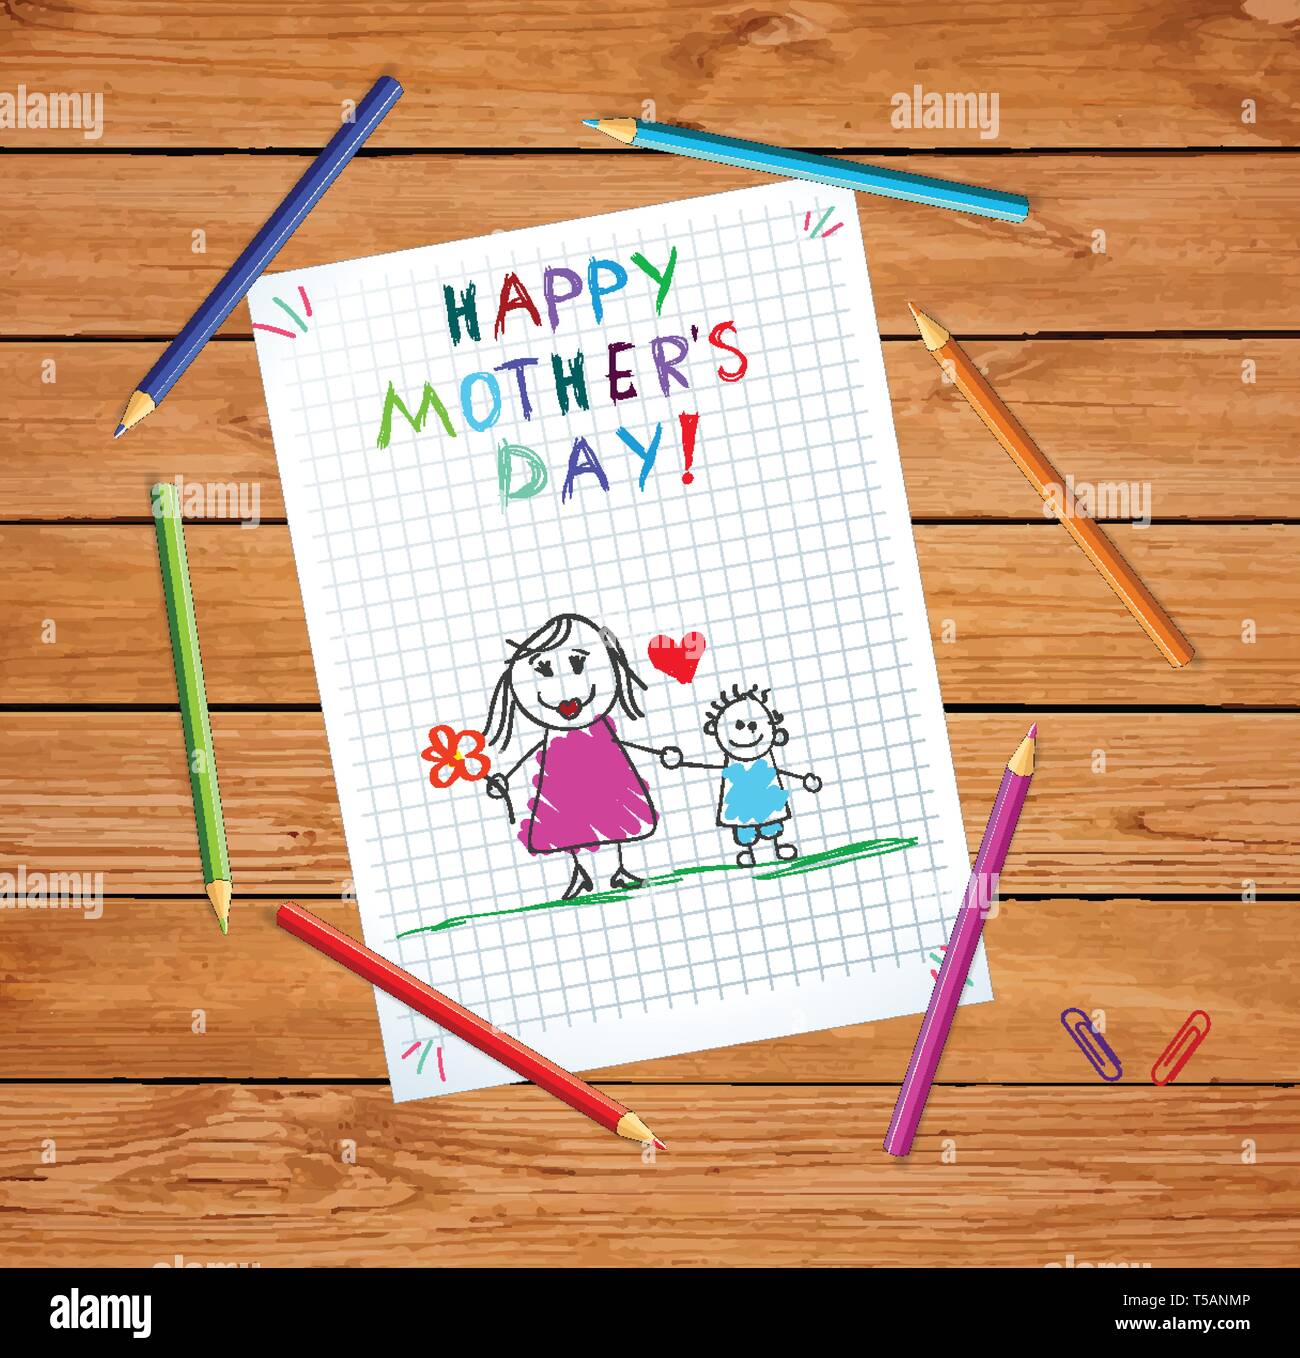 Glückliche Mütter Tag Baby Hand gezeichnete Bild der Mutter halten Hände mit Sohn auf karierten Notebook Blatt oder graphischen Papier auf Holztisch mit Farbe Stock Vektor